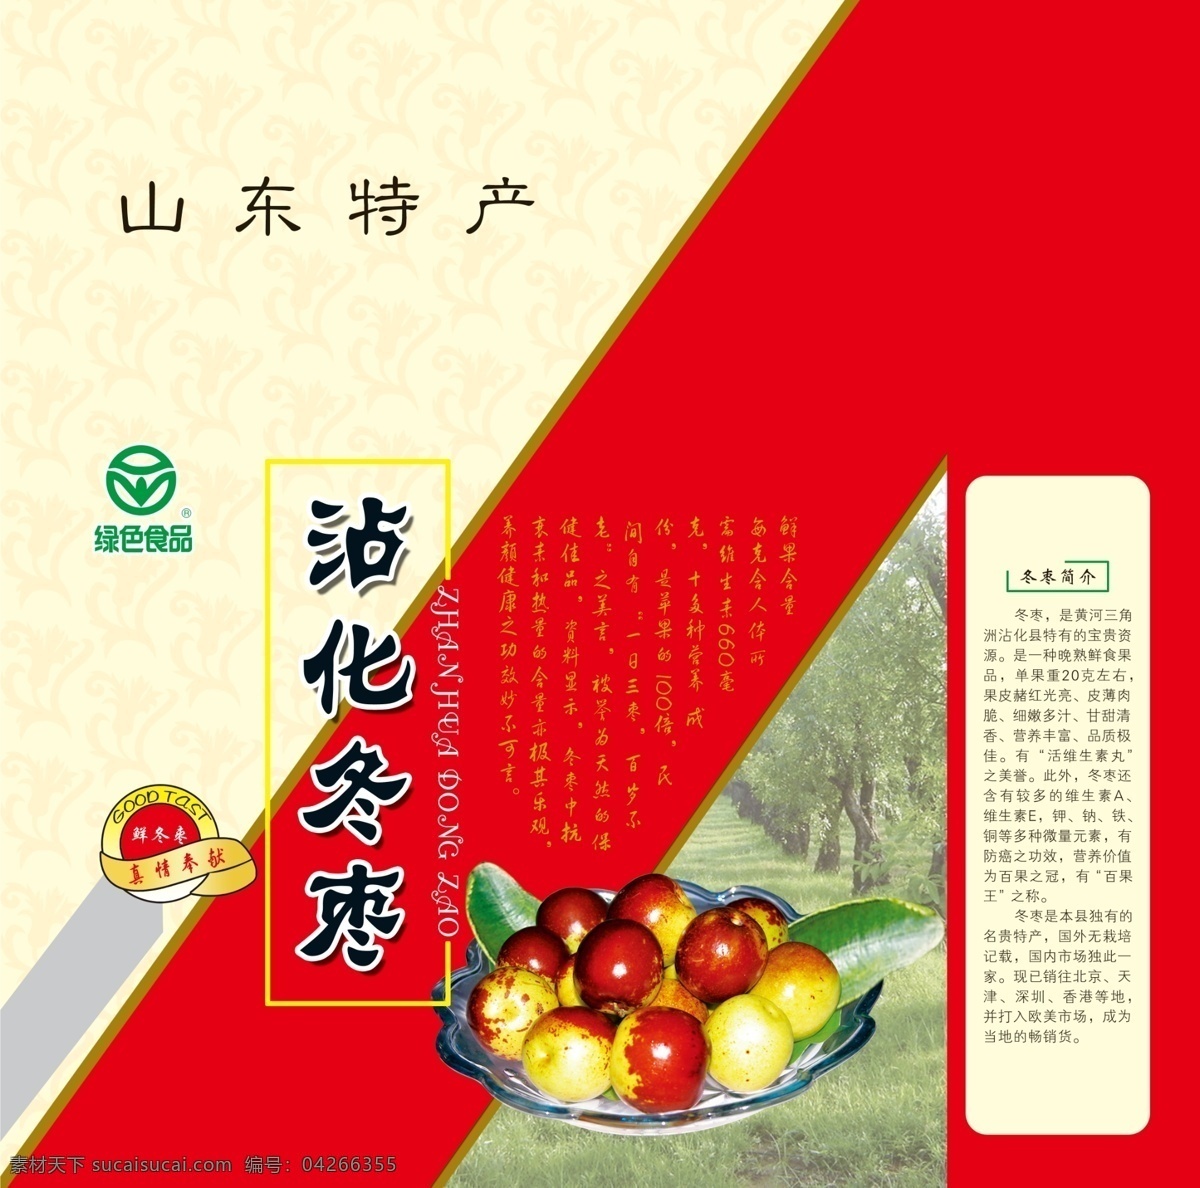 冬枣 包装 包装设计 广告设计模板 绿色食品 源文件 模板下载 冬枣包装 枣林